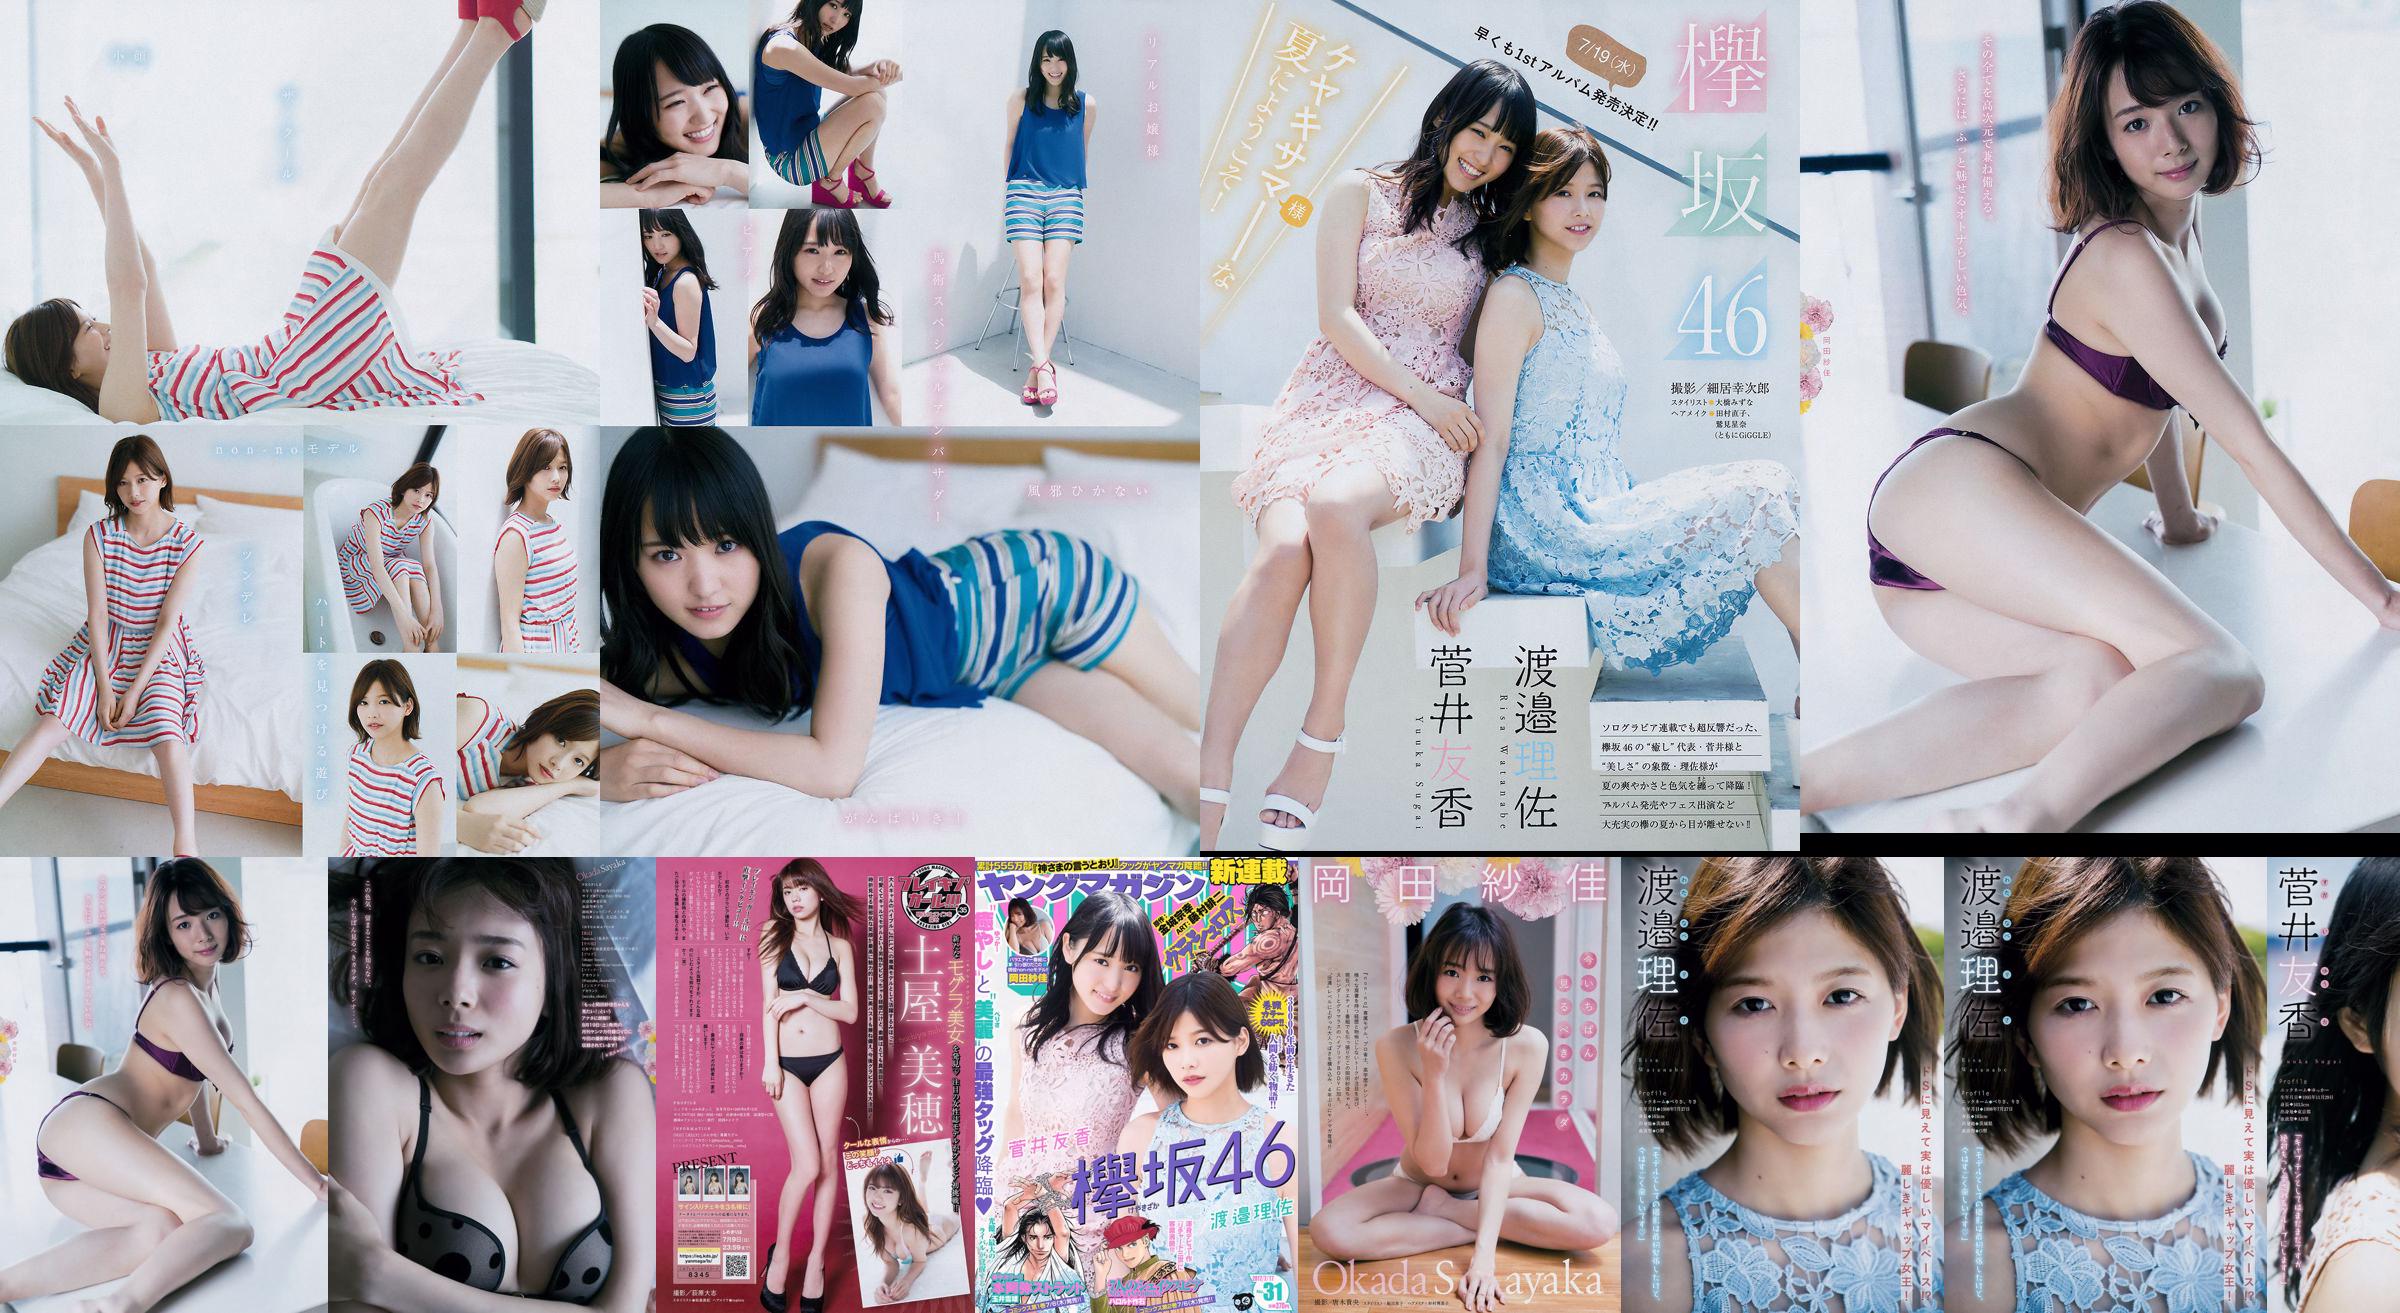 [Young Magazine] Watanabe Risa, Sugai Yuka, Okada Saika 2017 No.31 Photo Magazine No.5d2830 Page 6